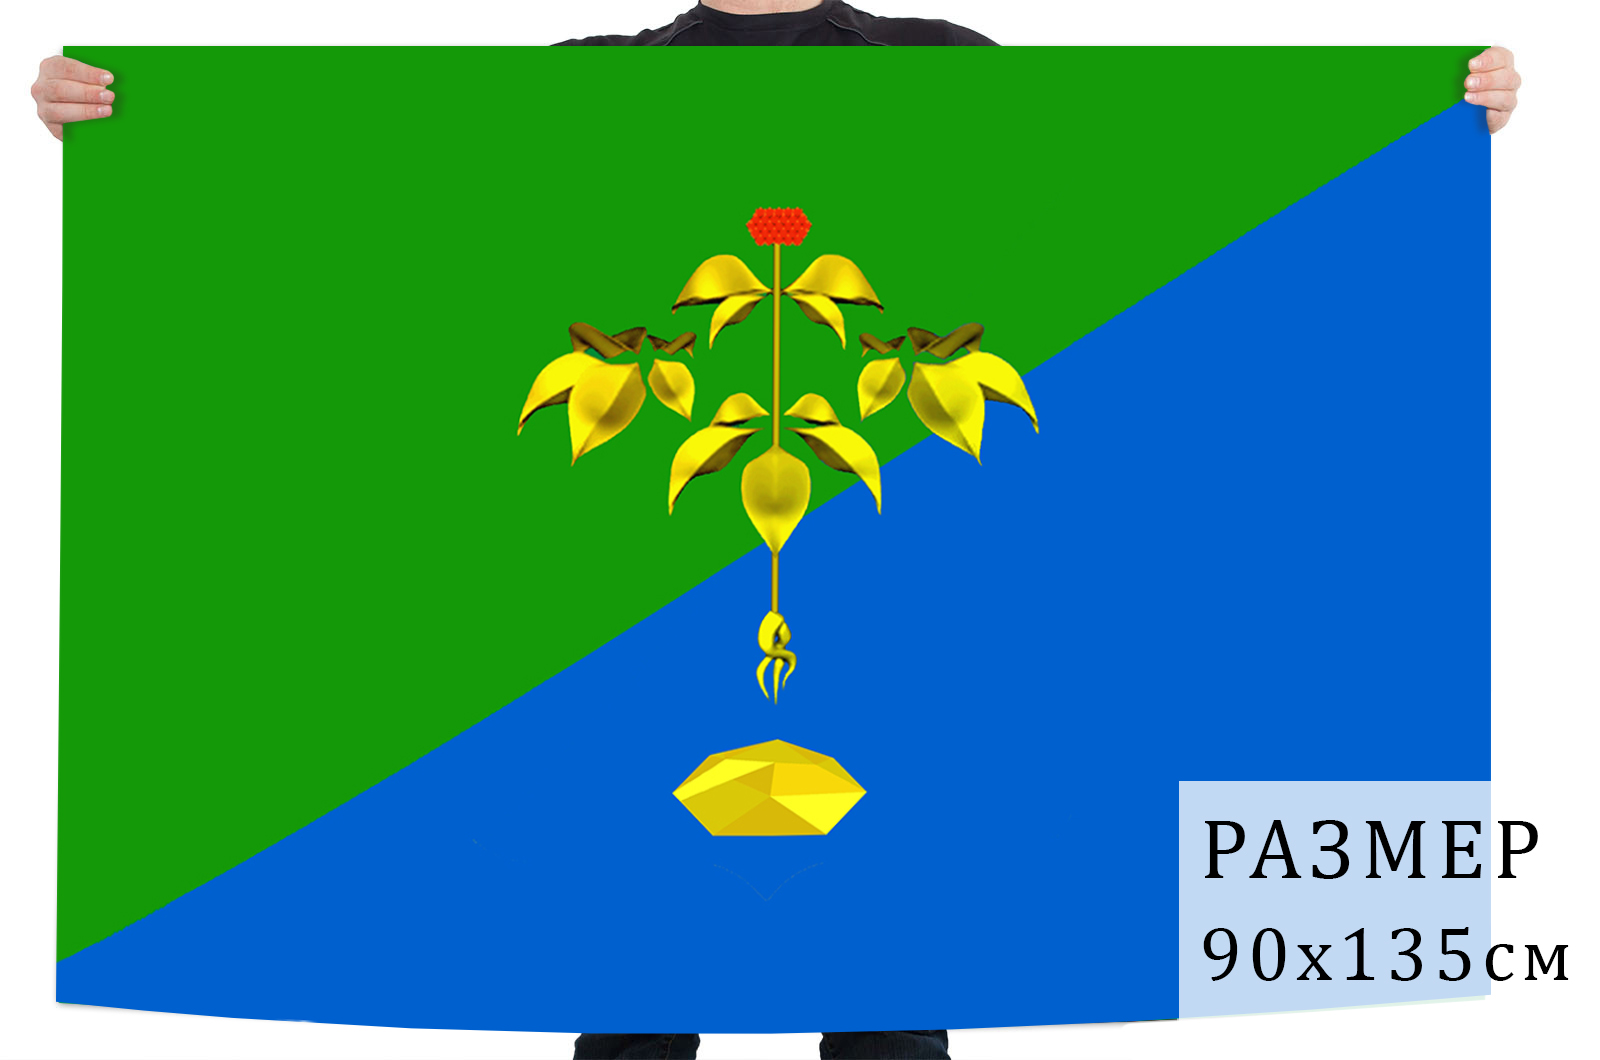 Флаг Партизанска